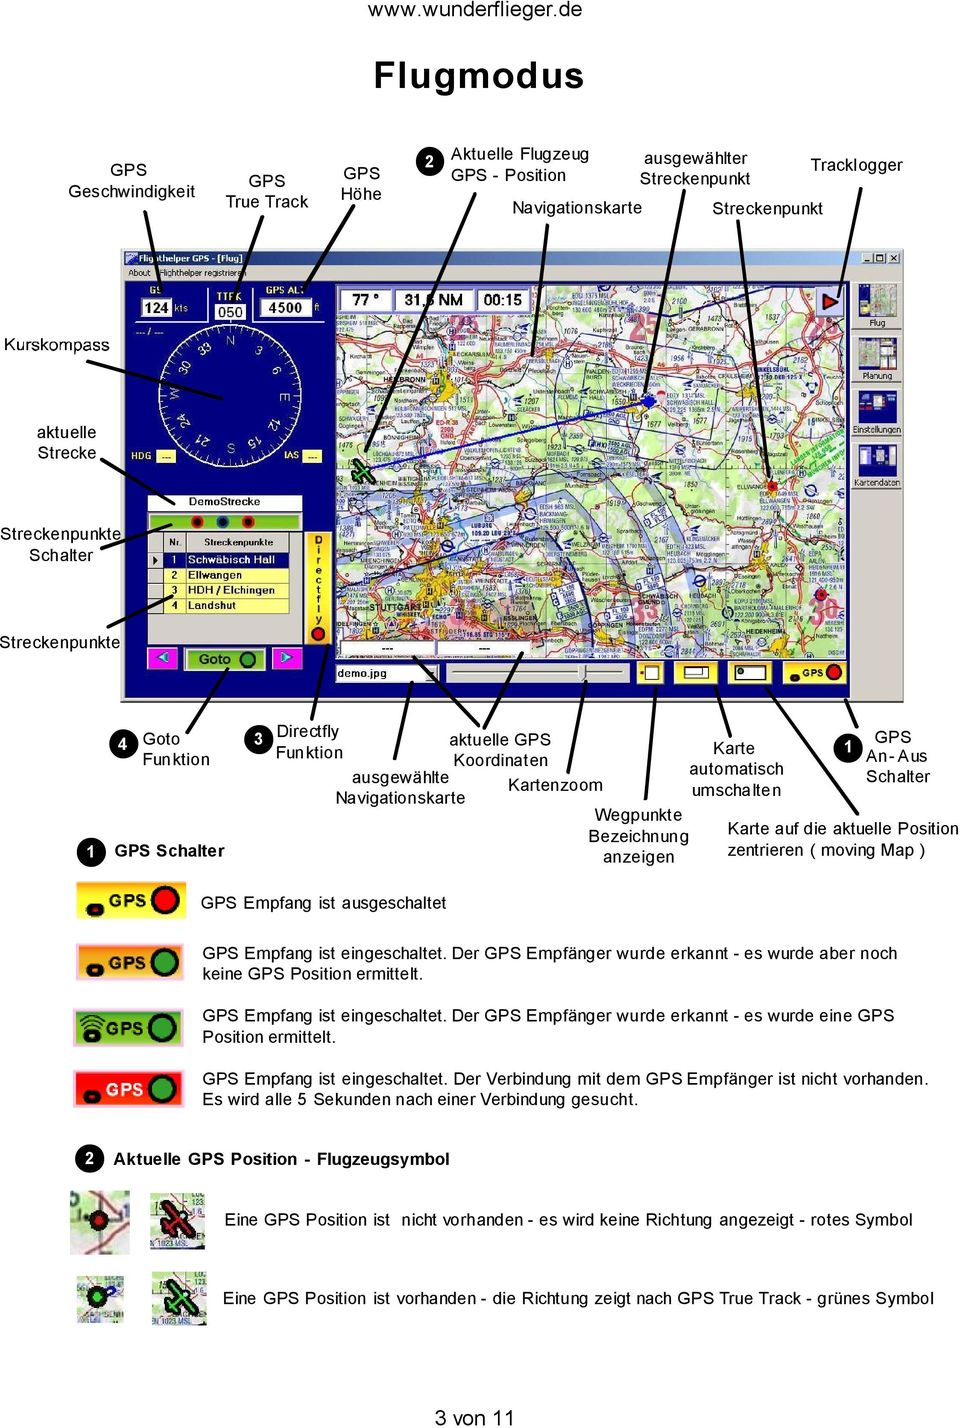 An-Aus Schalter Karte auf die aktuelle Position zentrieren ( moving Map ) 1 GPS Empfang ist ausgeschaltet GPS Empfang ist eingeschaltet.